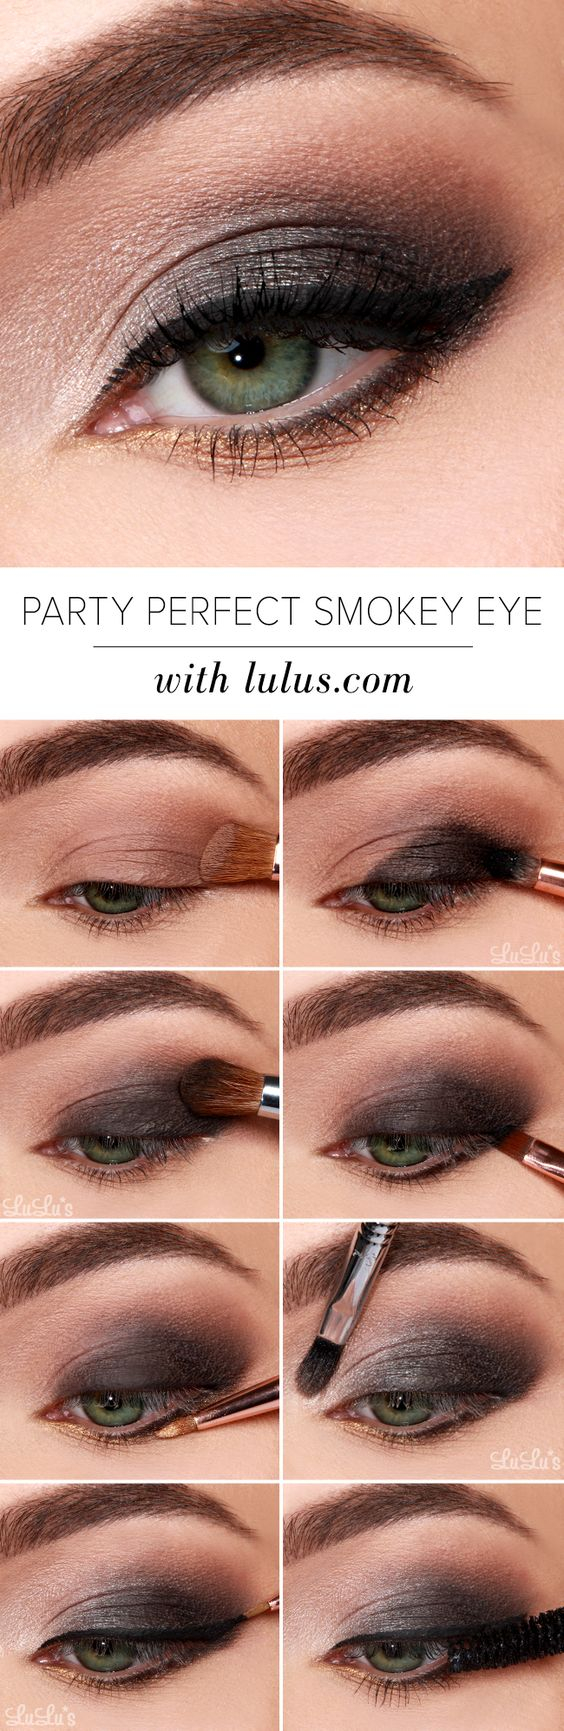 Smokey Eye Makeup Pictures 40 Hottest Smokey Eye Makeup Ideas 2019 Smokey Eye Tutorials For